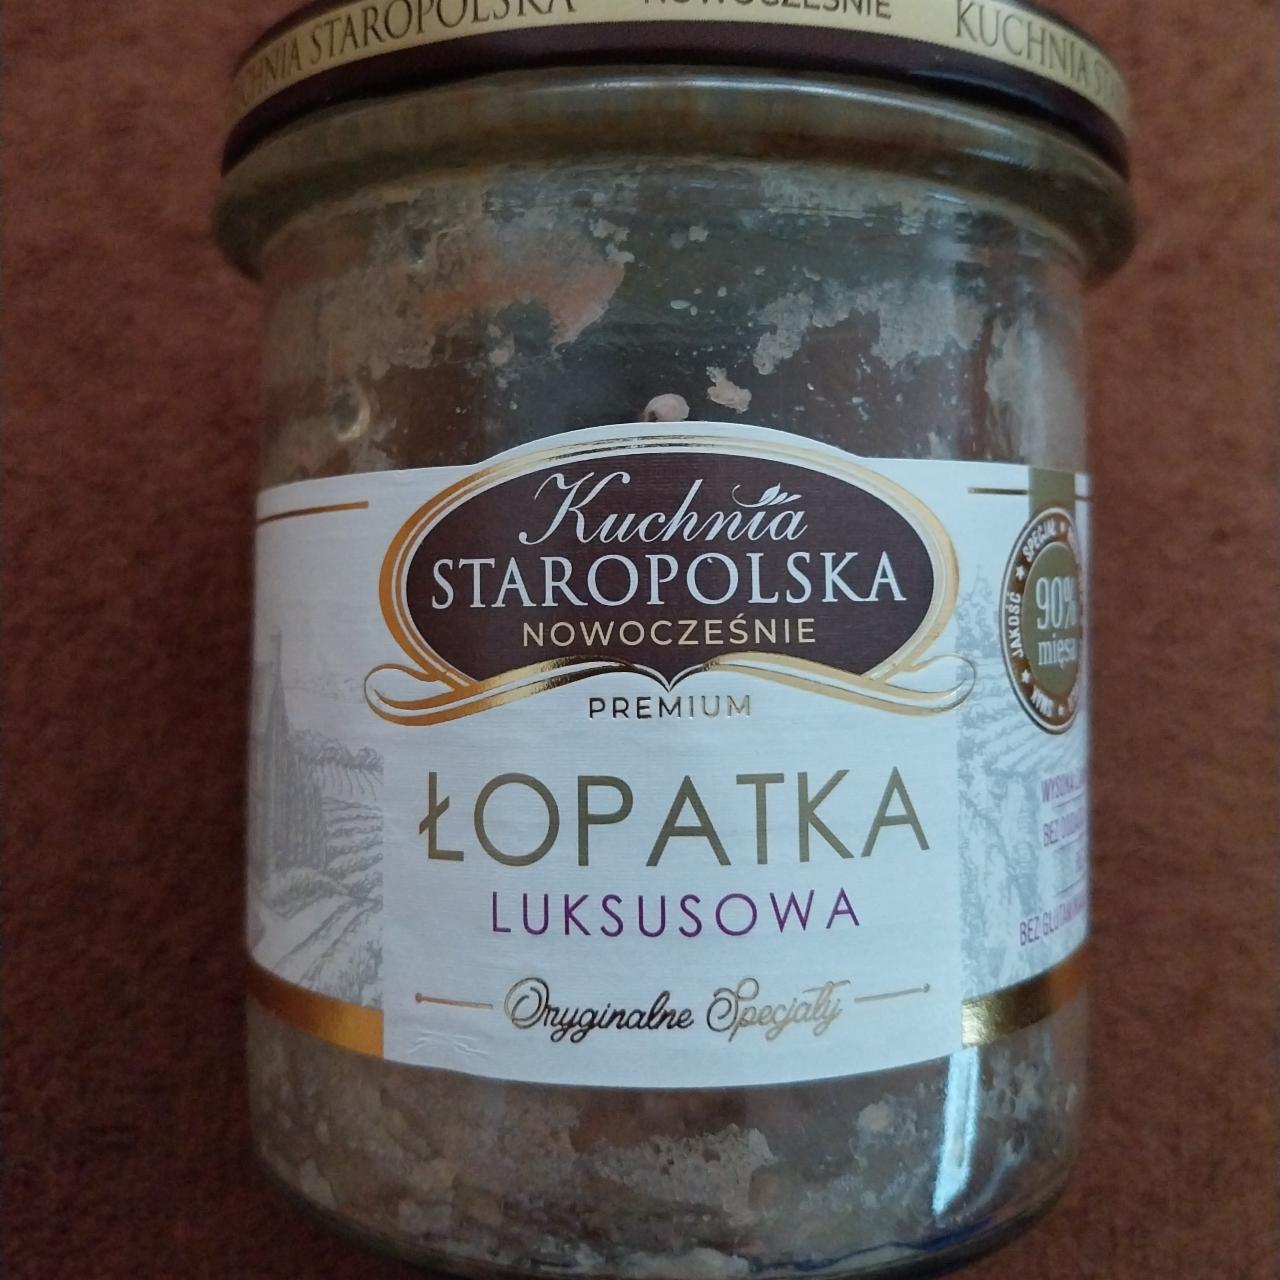 Zdjęcia - Premium Łopatka luksusowa Kuchnia Staropolska